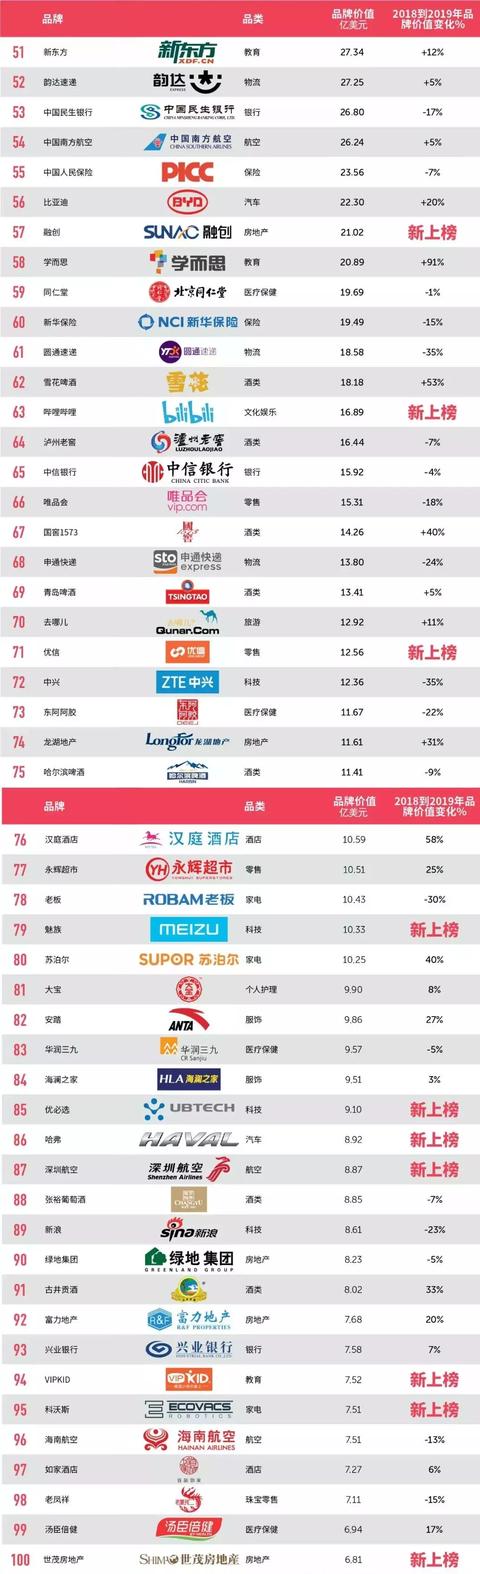 2019最具价值中国品牌100强发布（完整榜单）